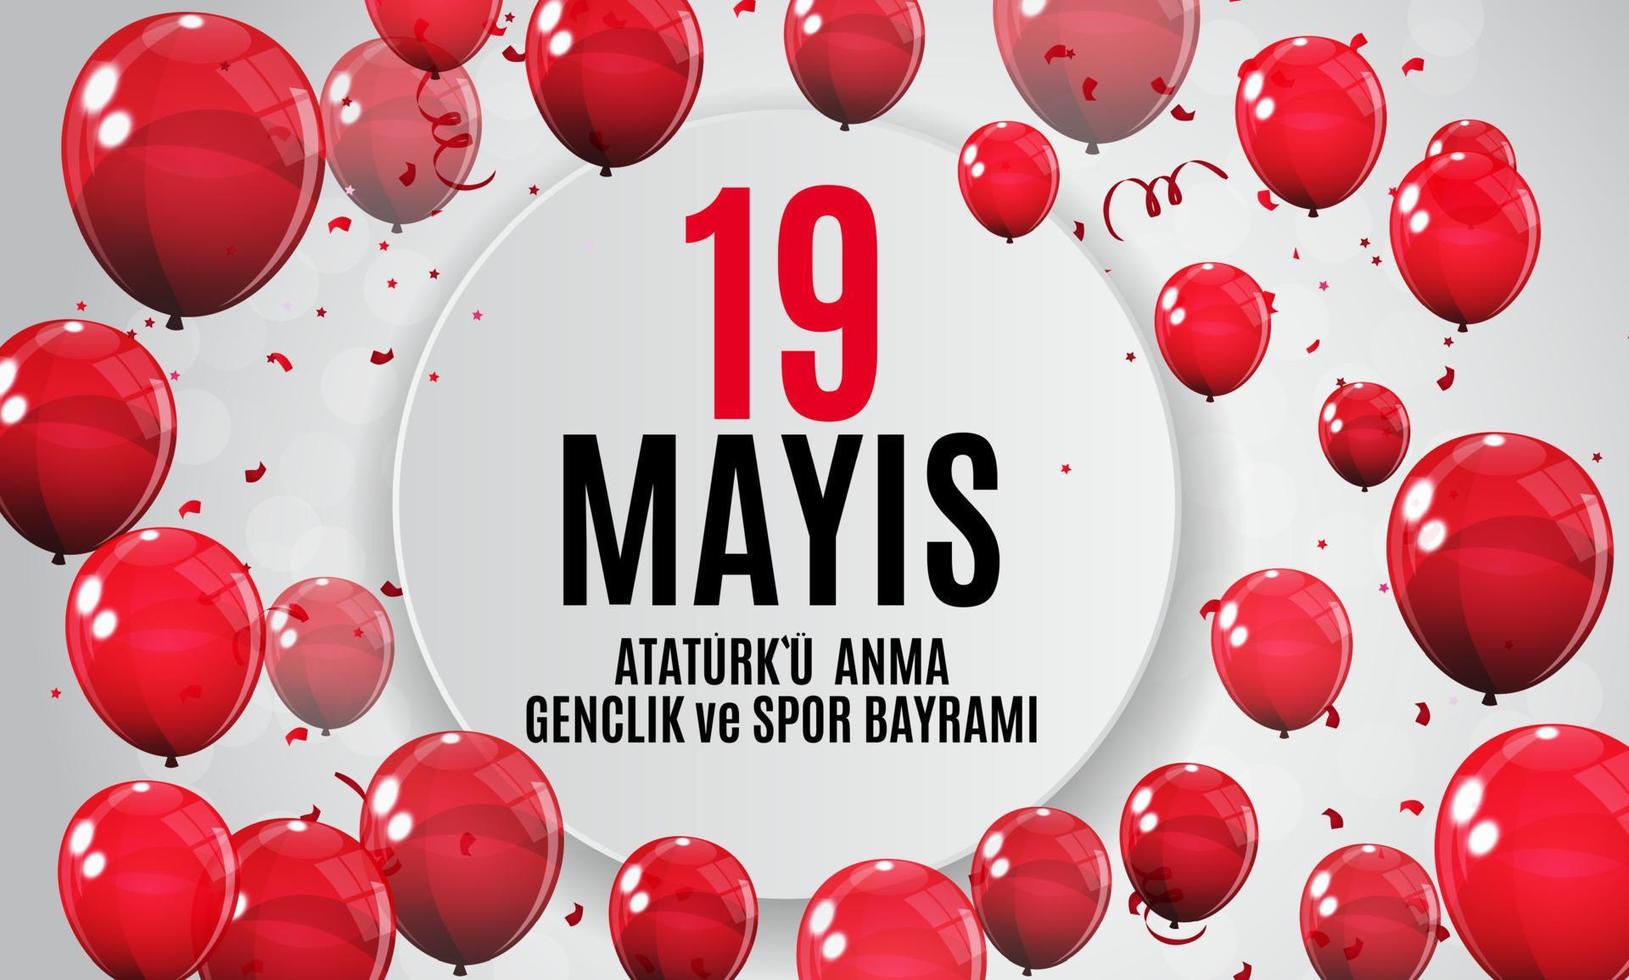 19 de maio comemoração do ataturk, dia da juventude e do desporto. o turco fala 19 mayis ataturku anma, genclik ve spor bayrami. cartão de saudação de feriado turco. ilustração vetorial vetor